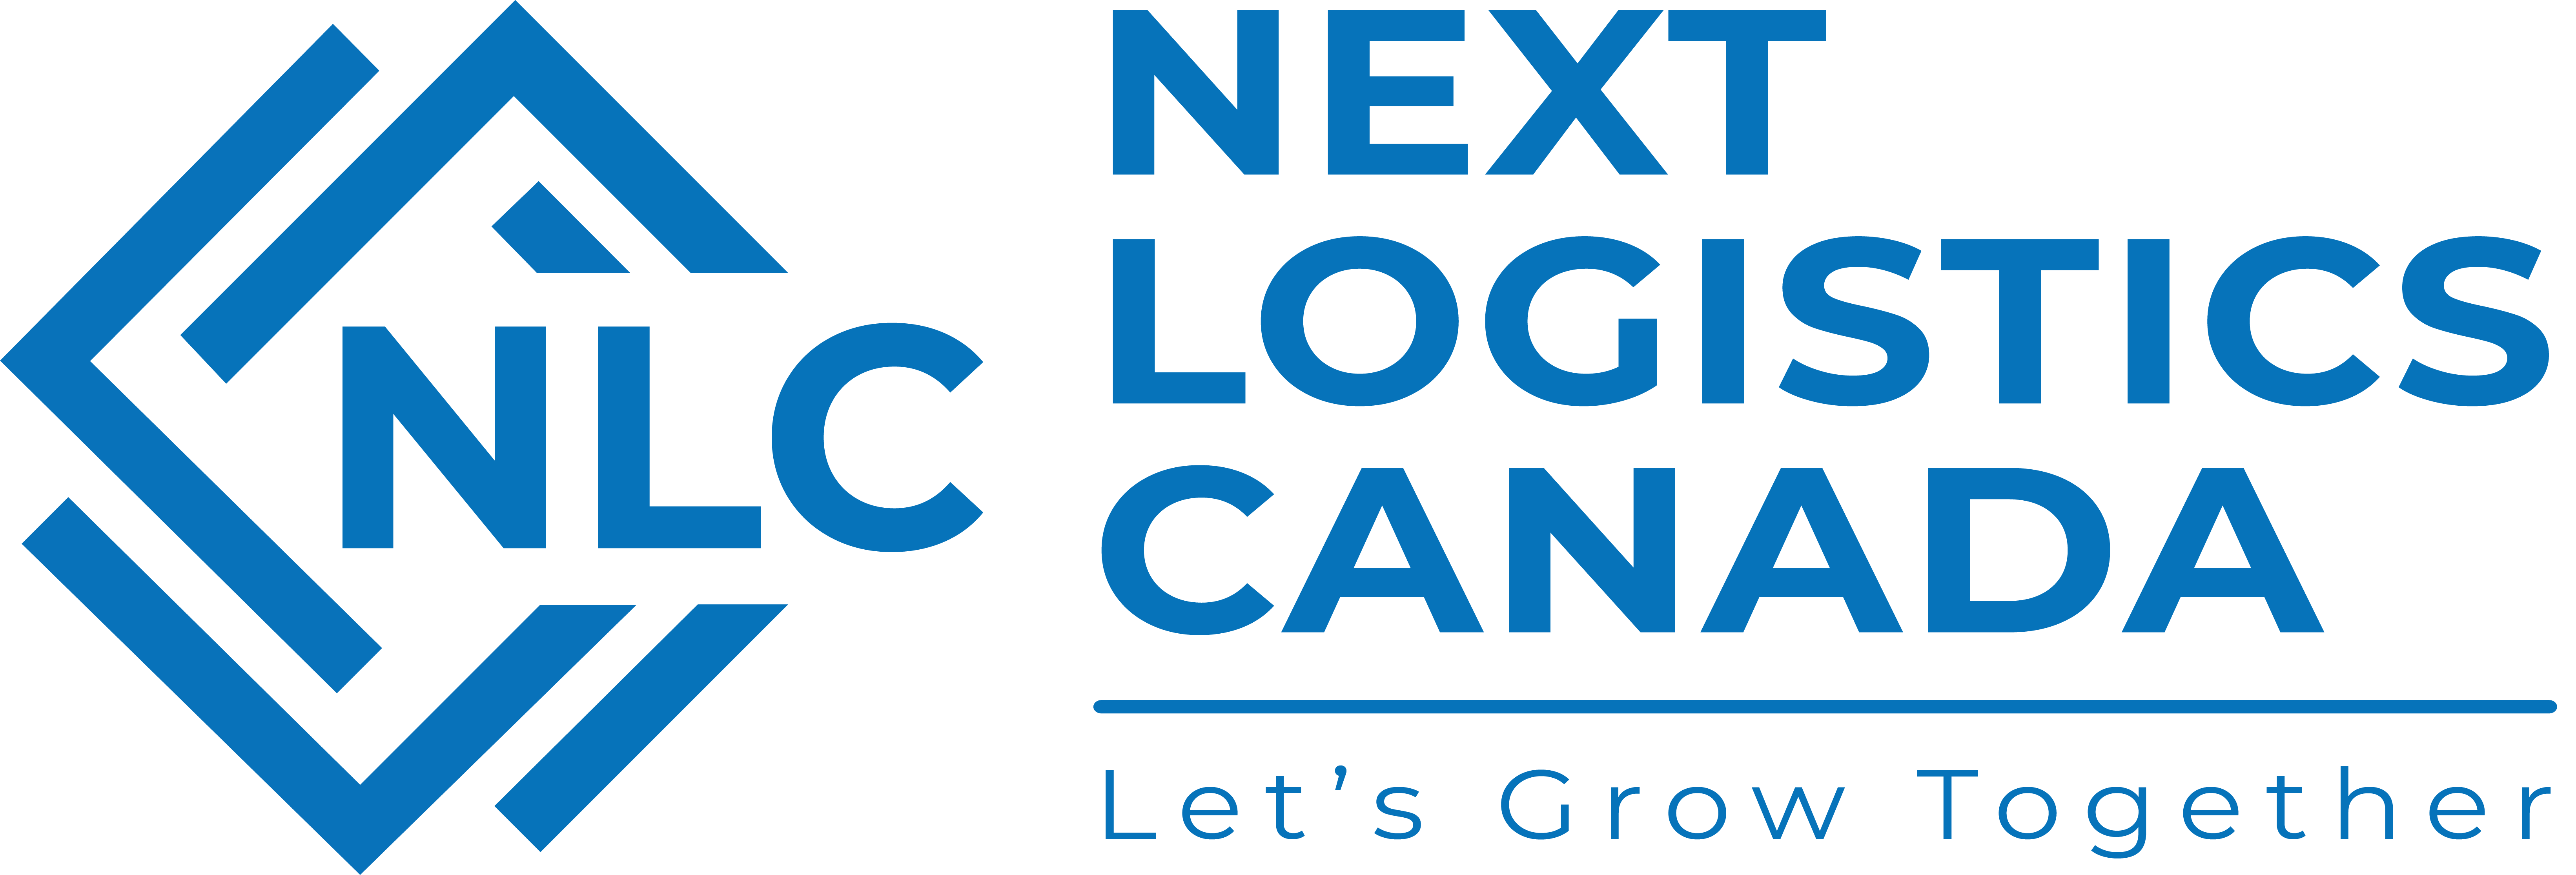 Next Logistics Canada